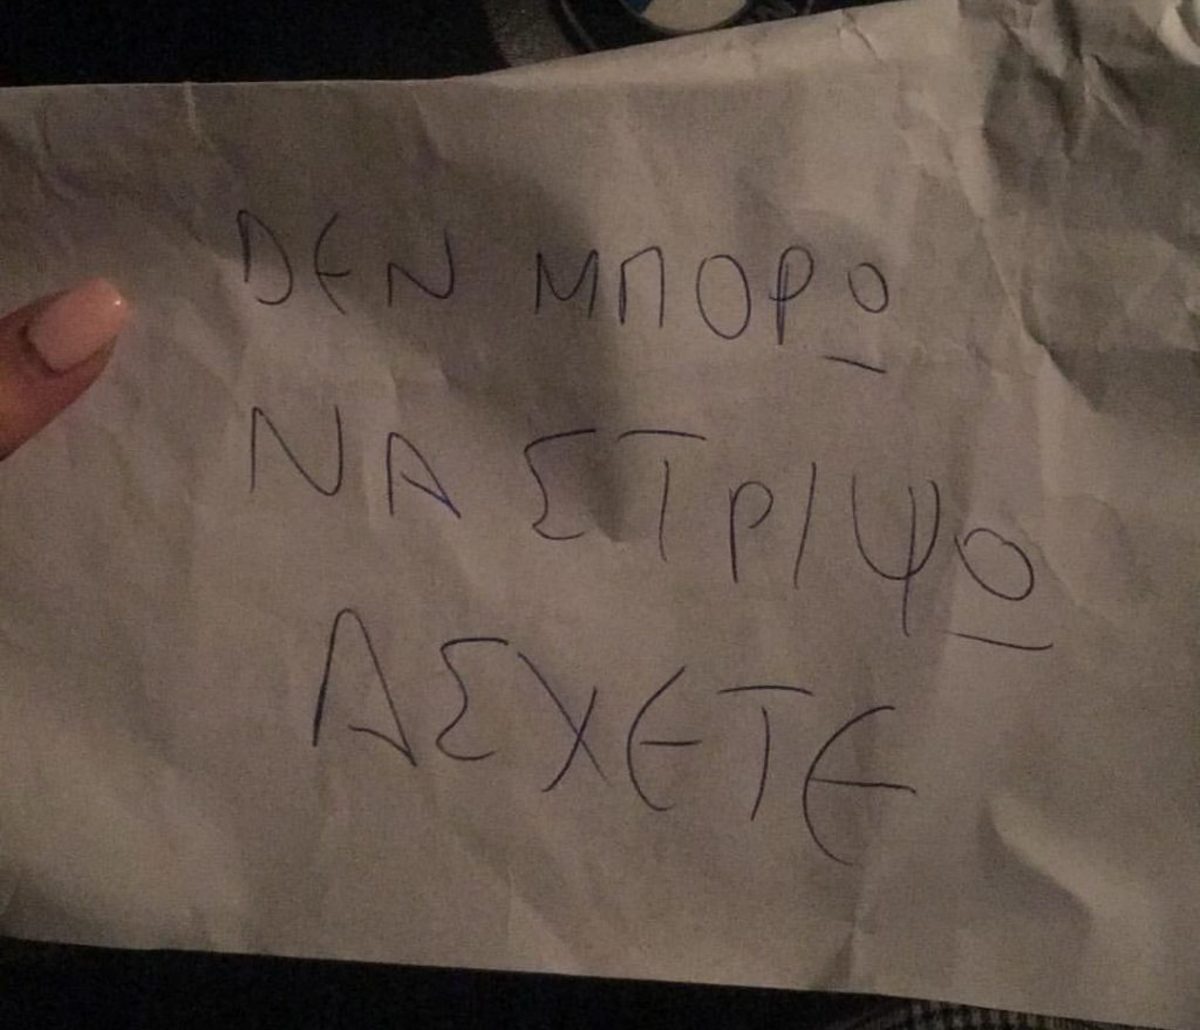 “Δεν μπορώ να στρίψω άσχετη” Ποια γνωστή Ελληνίδα πήρε αυτό το σημείωμα στο αυτοκίνητό της;